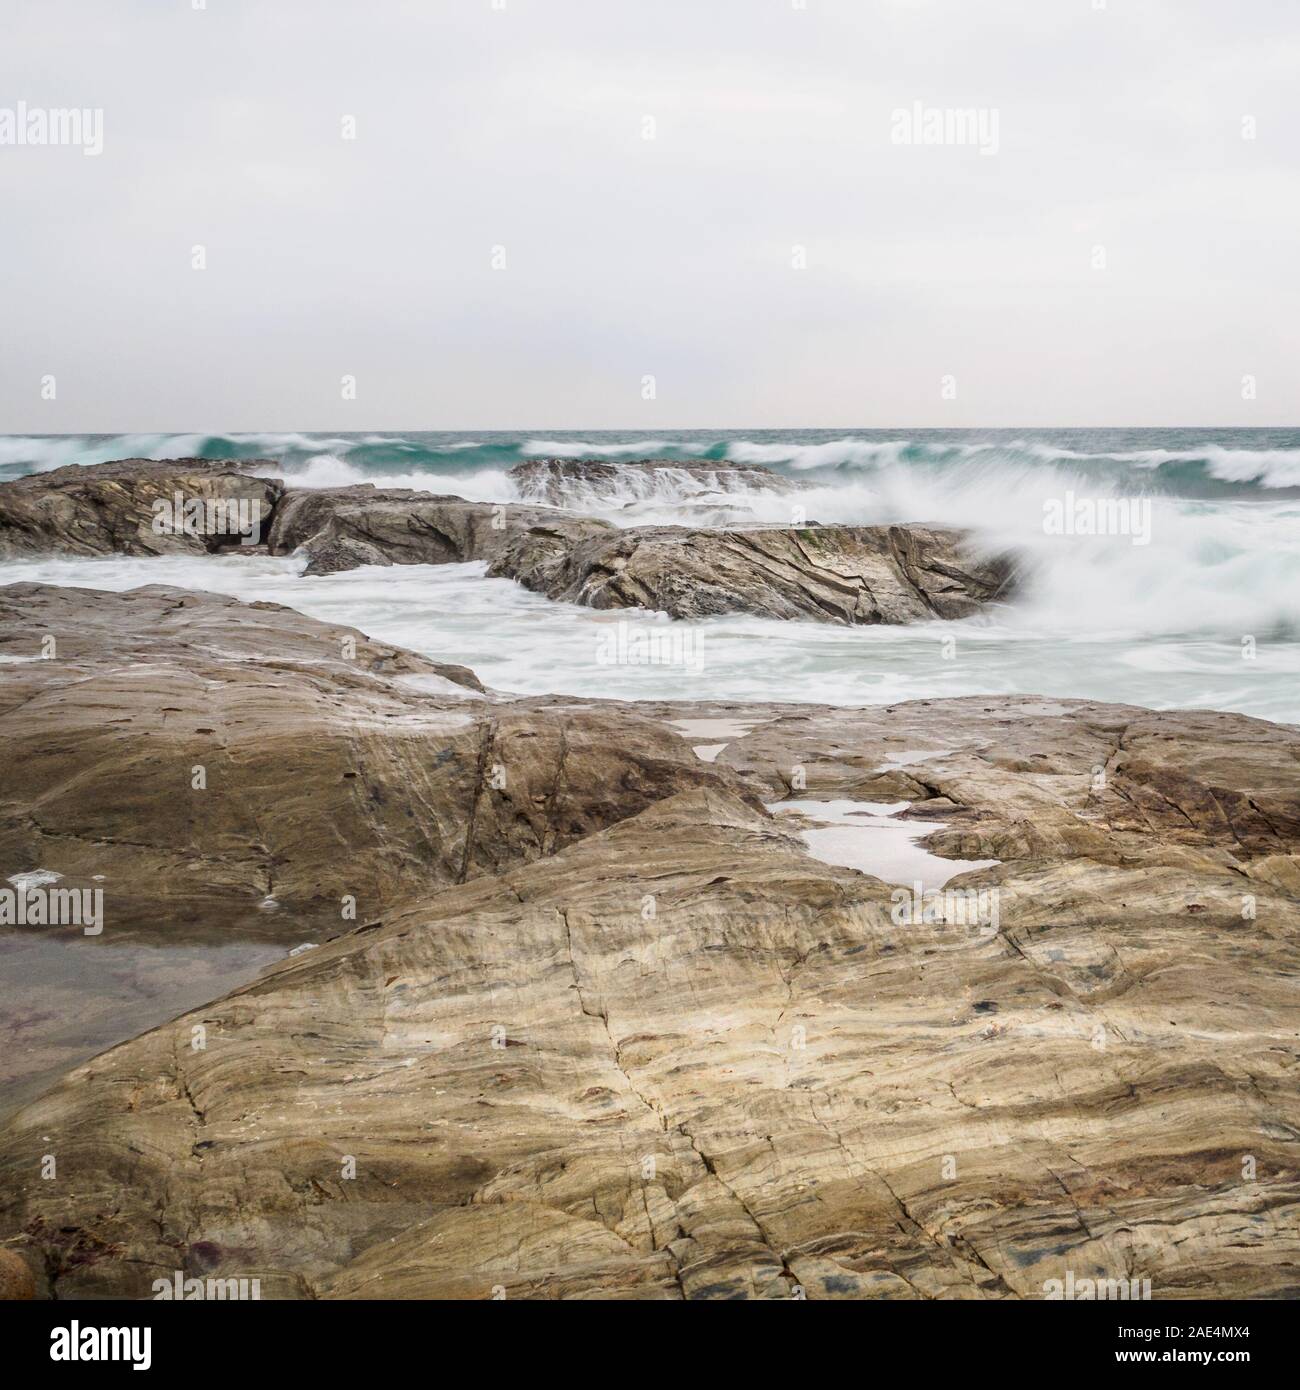 Long exposure of waves breaking on rocks, Atlantic Ocean, Portugal Stock Photo